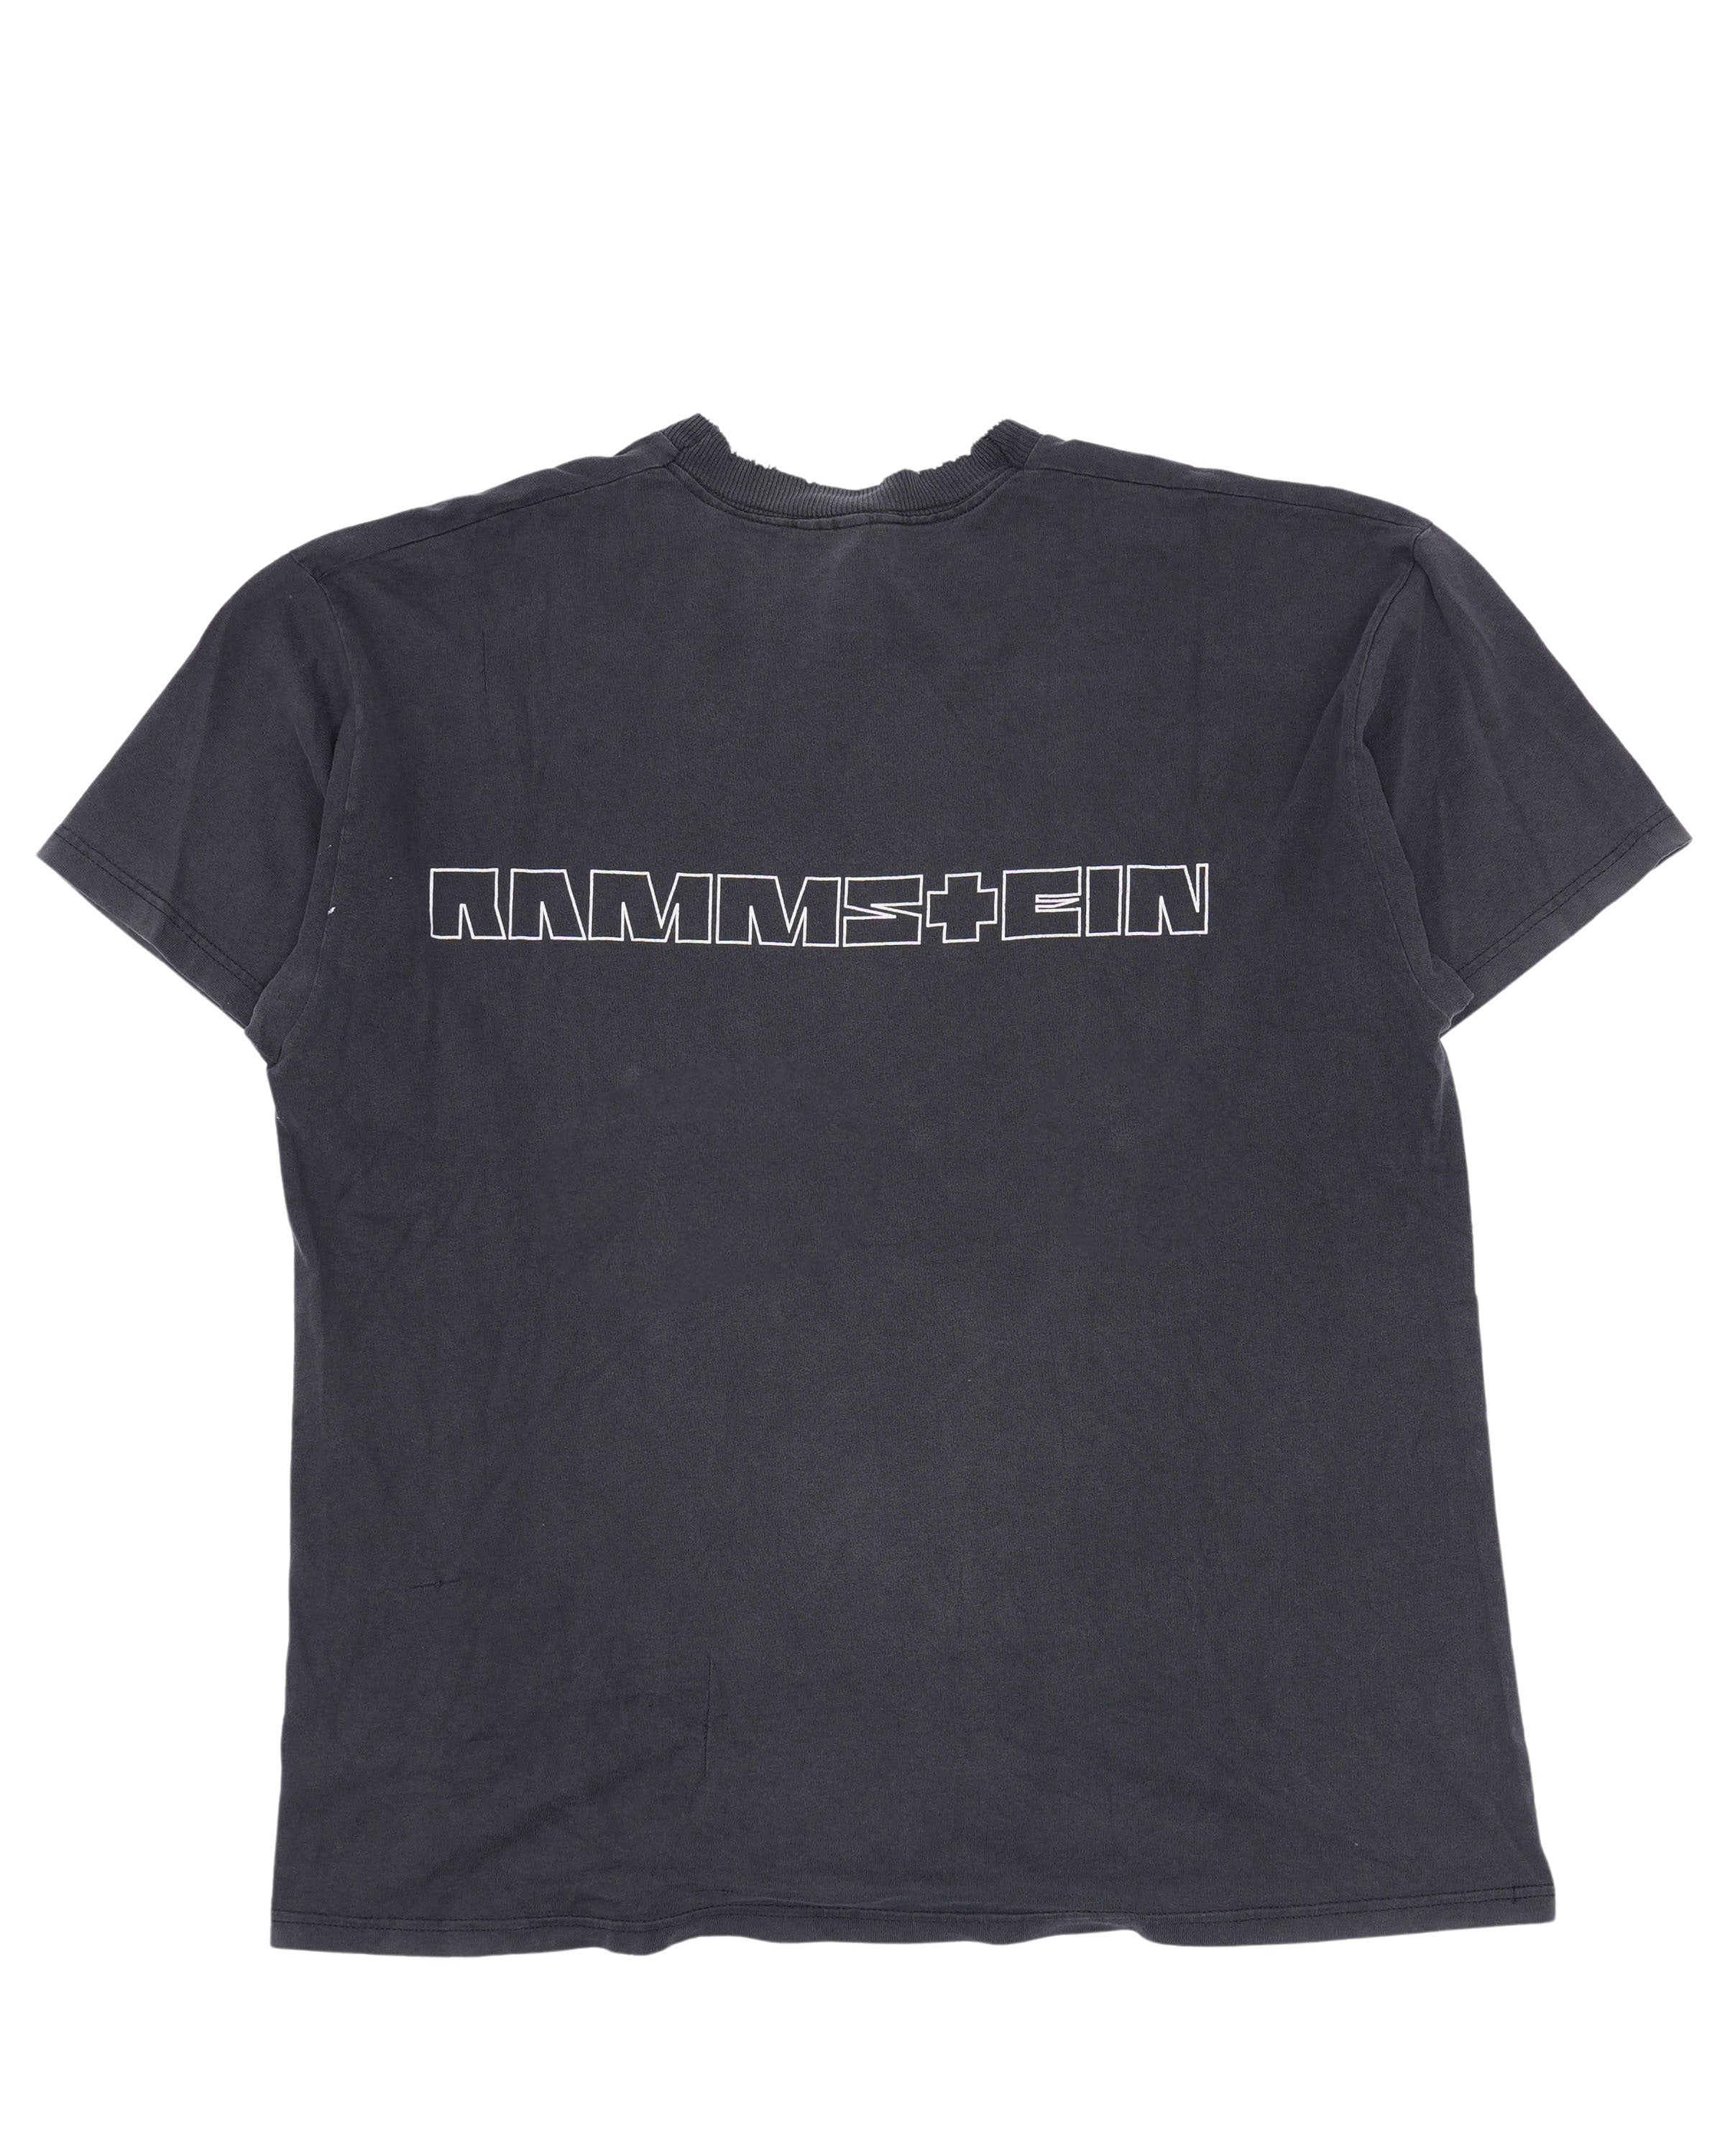 1998 Rammstein Sehnsucht T-Shirt